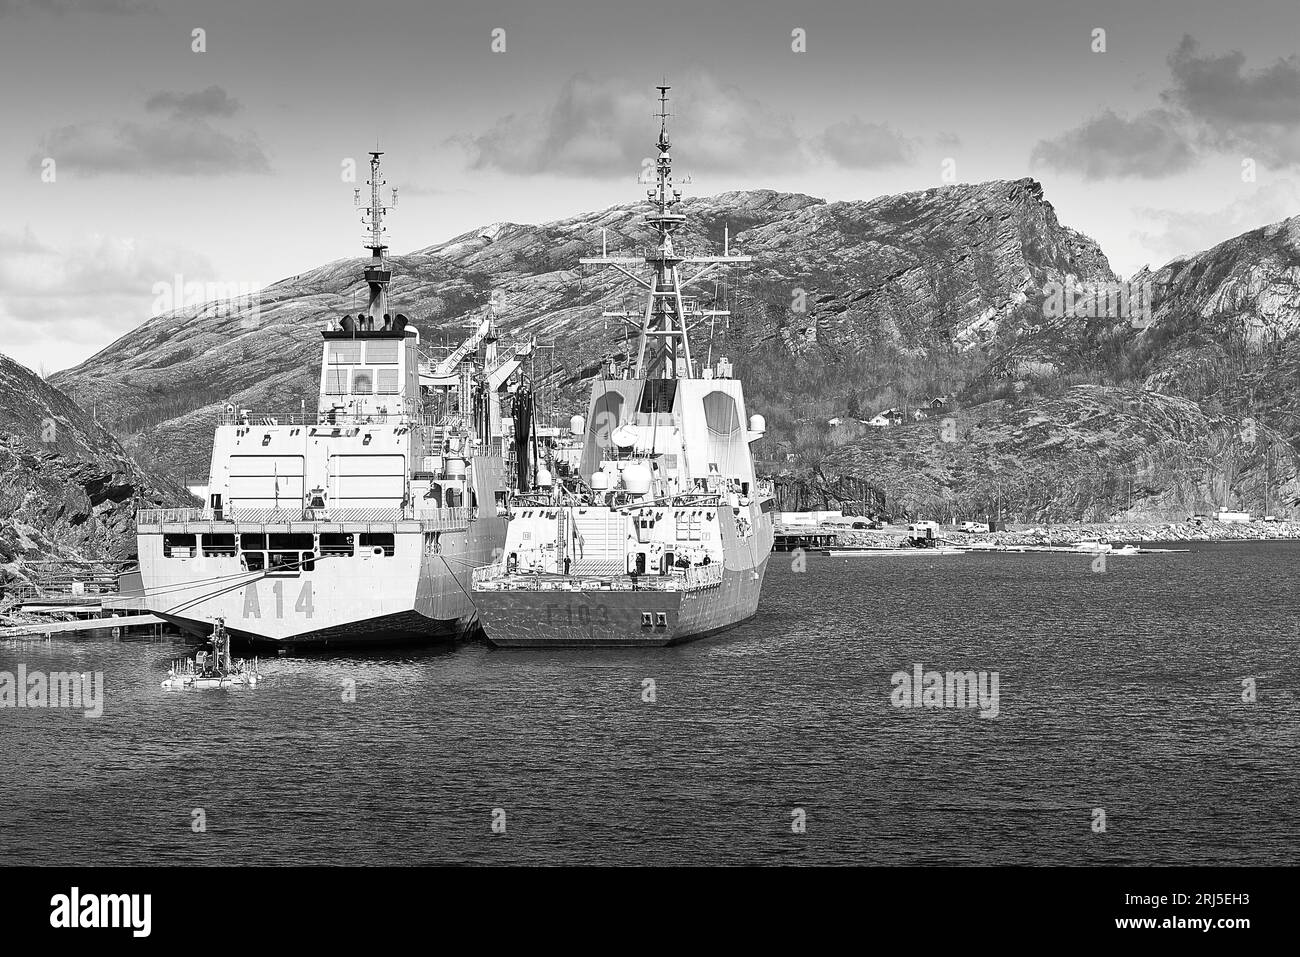 Foto in bianco e nero della Marina spagnola (Armada) Frigate BLAS DE LEZO & Replenishment Oiler Patiño, ormeggiato a Bodo, Norvegia durante le tensioni militari Foto Stock